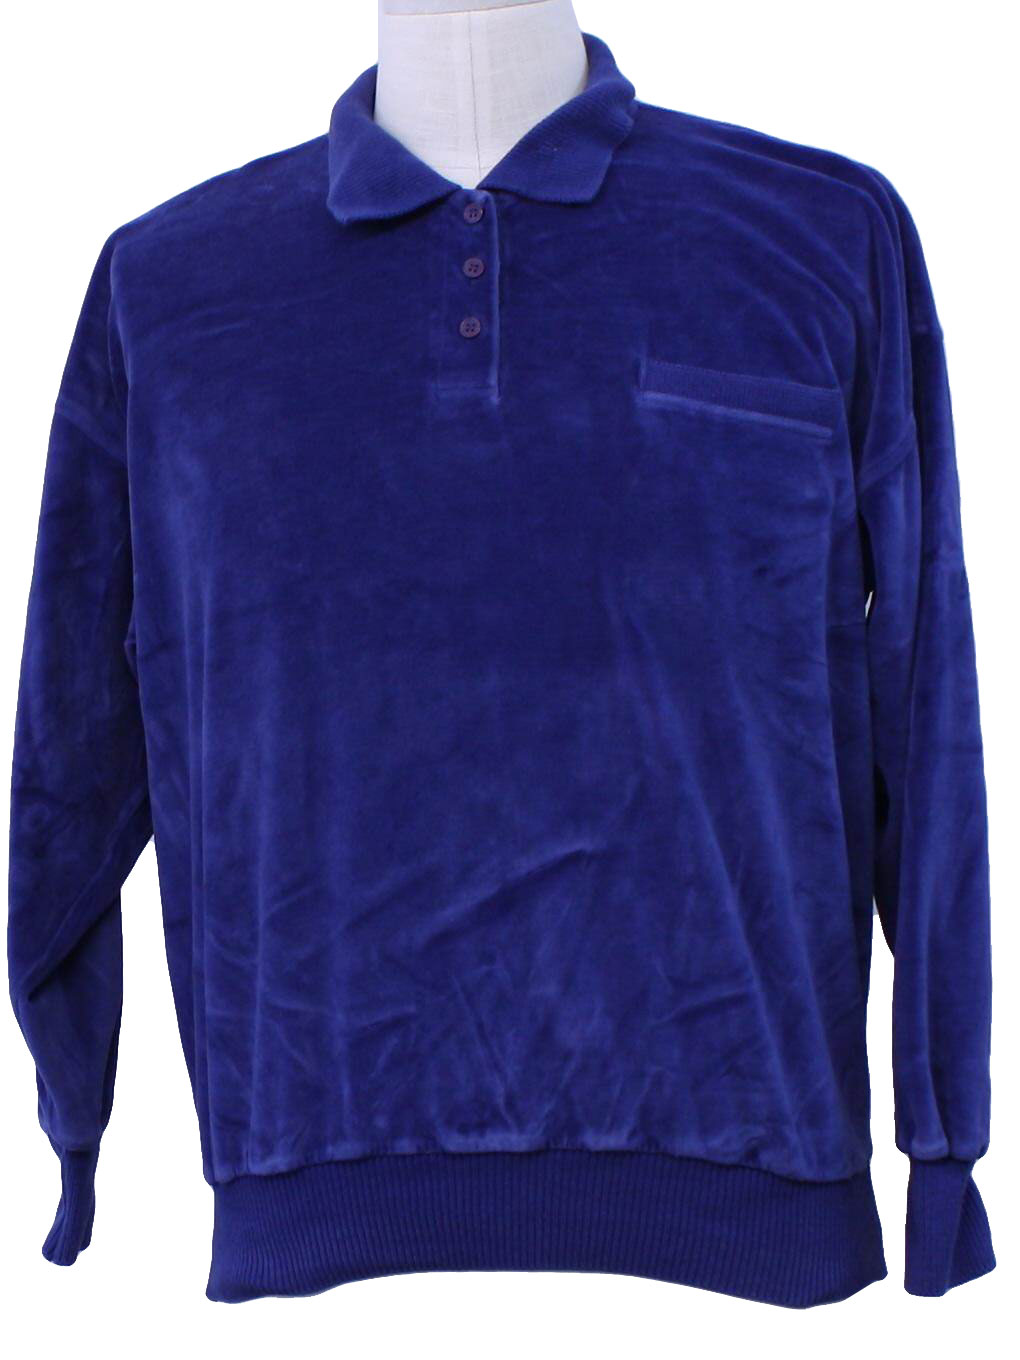 Vintage 80s Velour Shirt: 80s -Lizsport- Mens blue background cotton ...